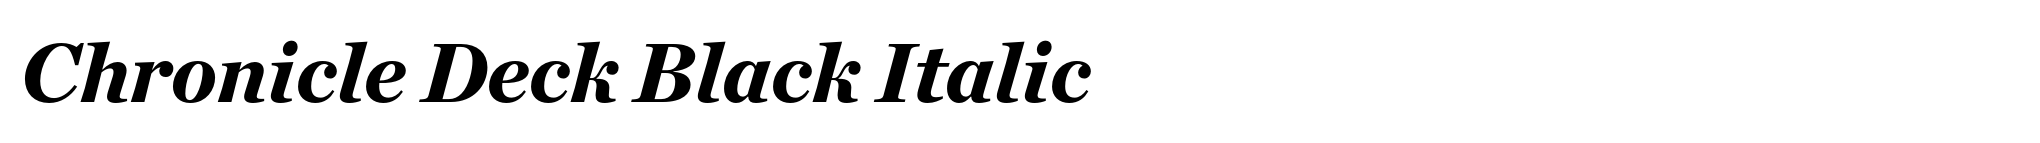 Chronicle Deck Black Italic image